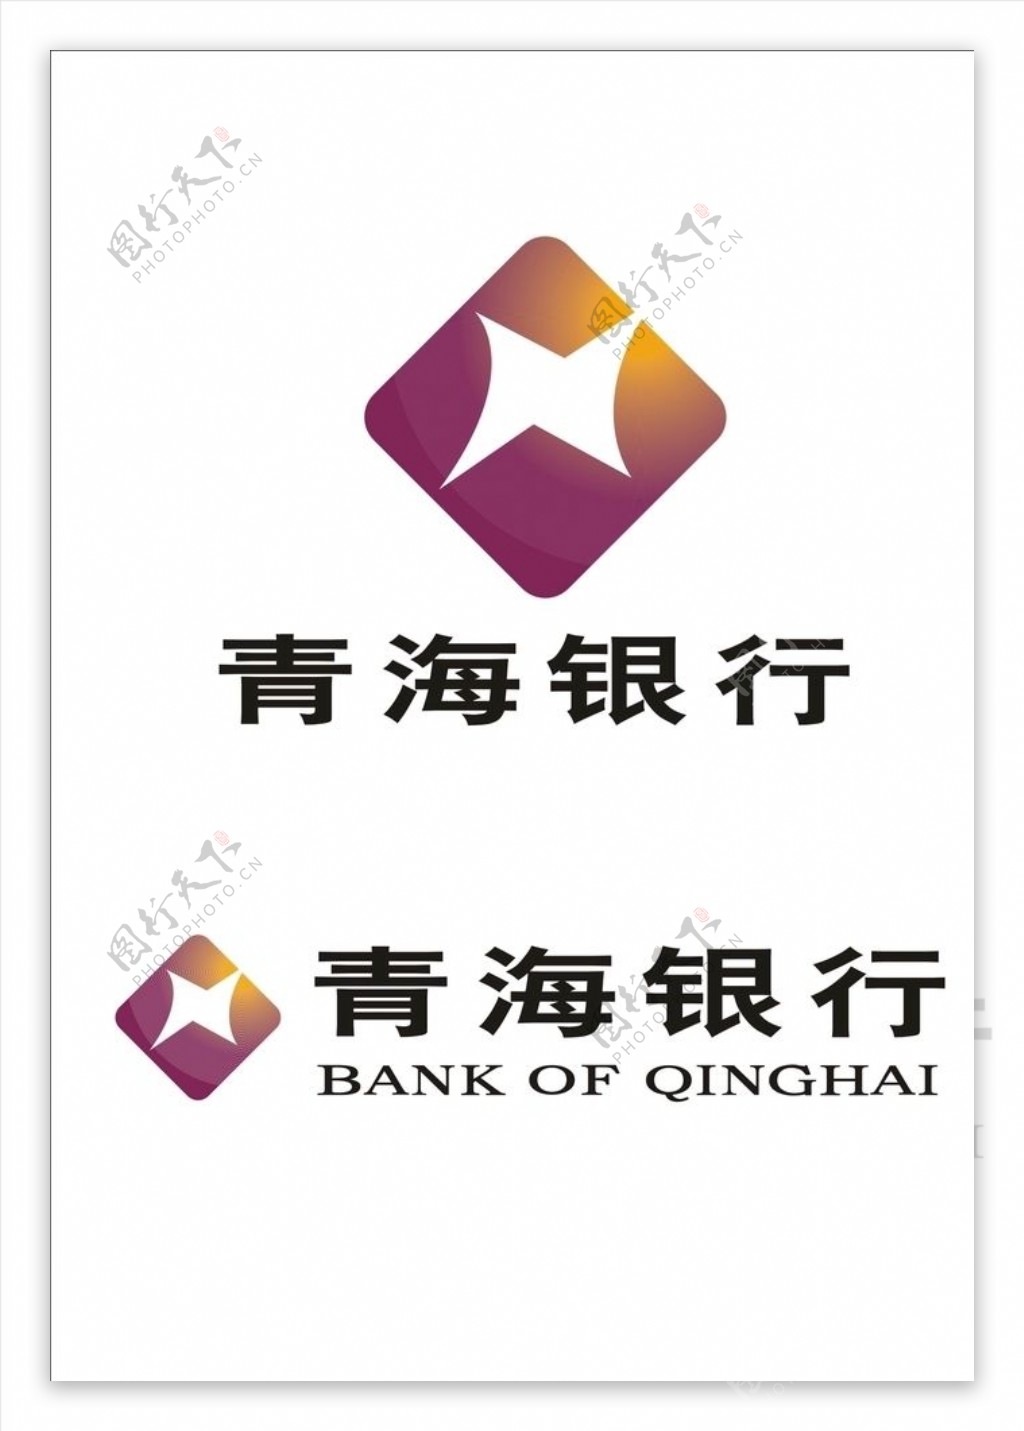 青海银行logo